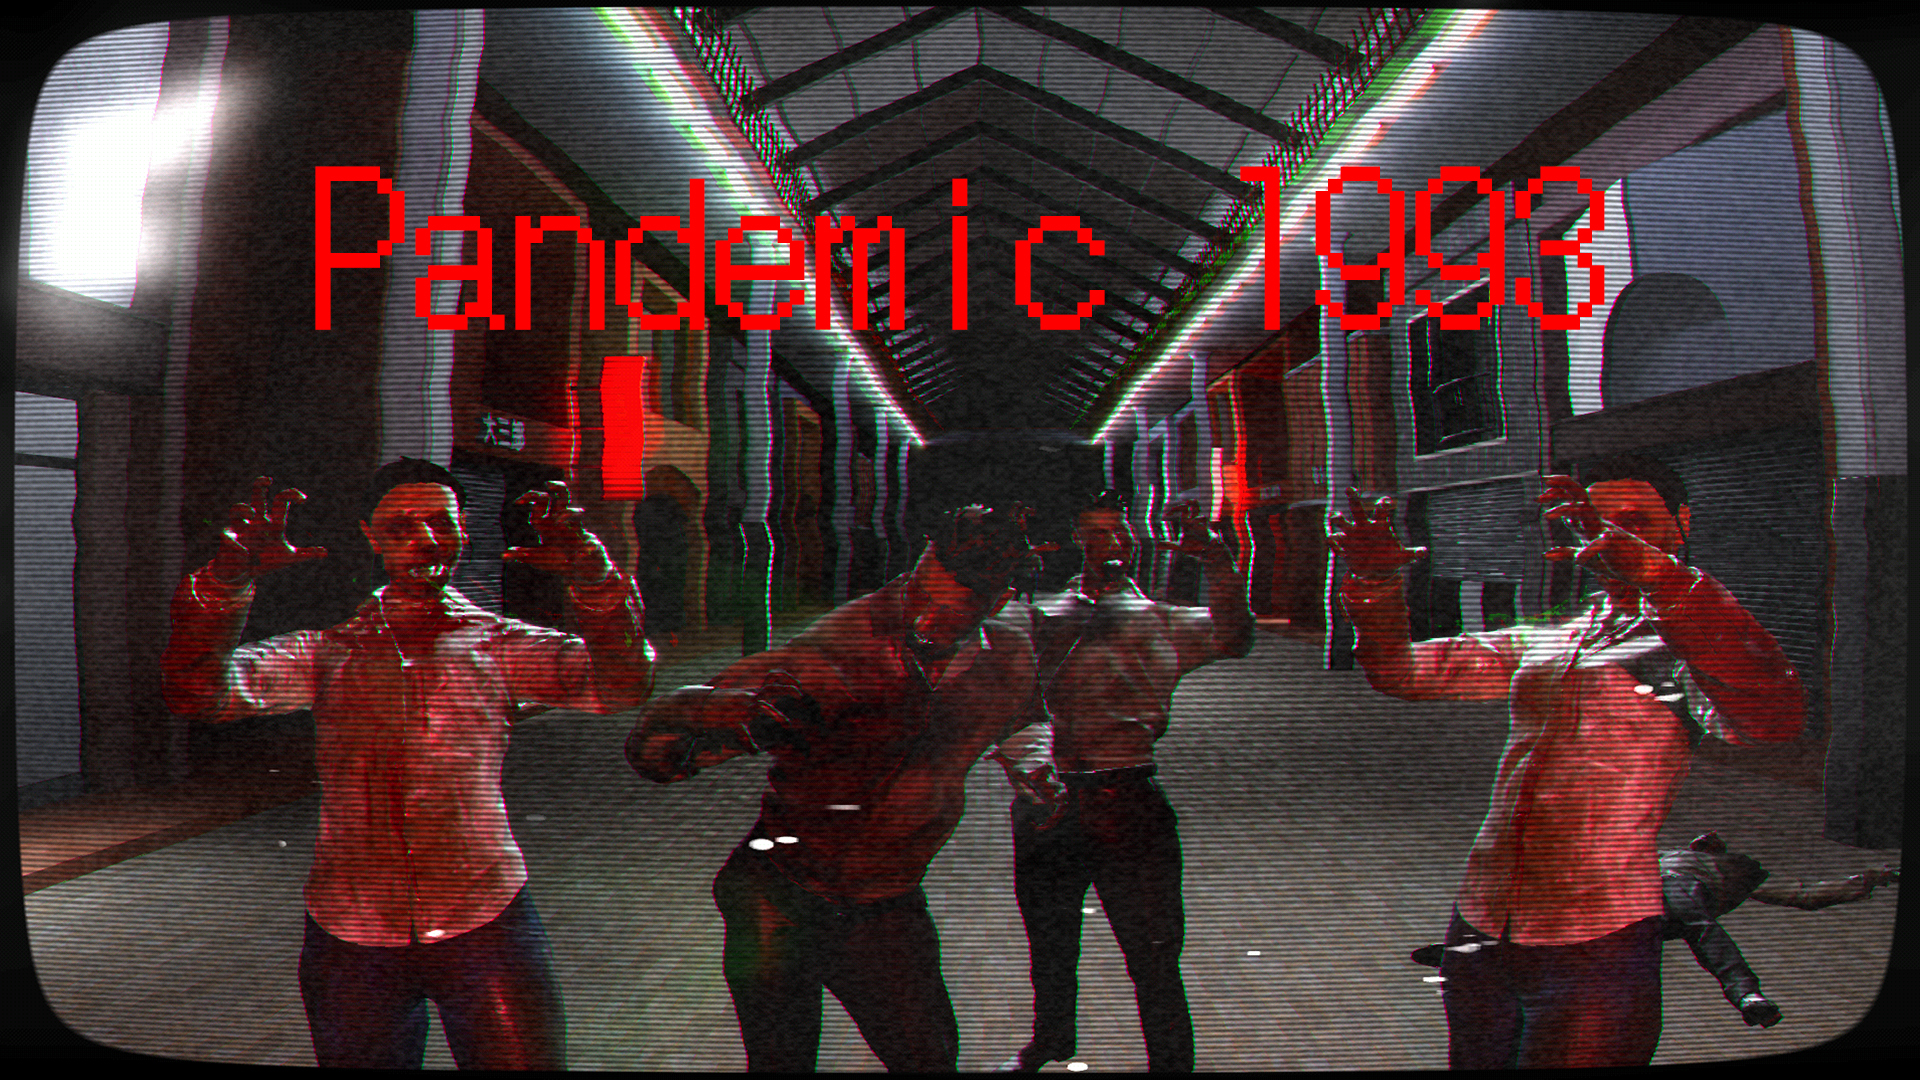 Pandemic 1993